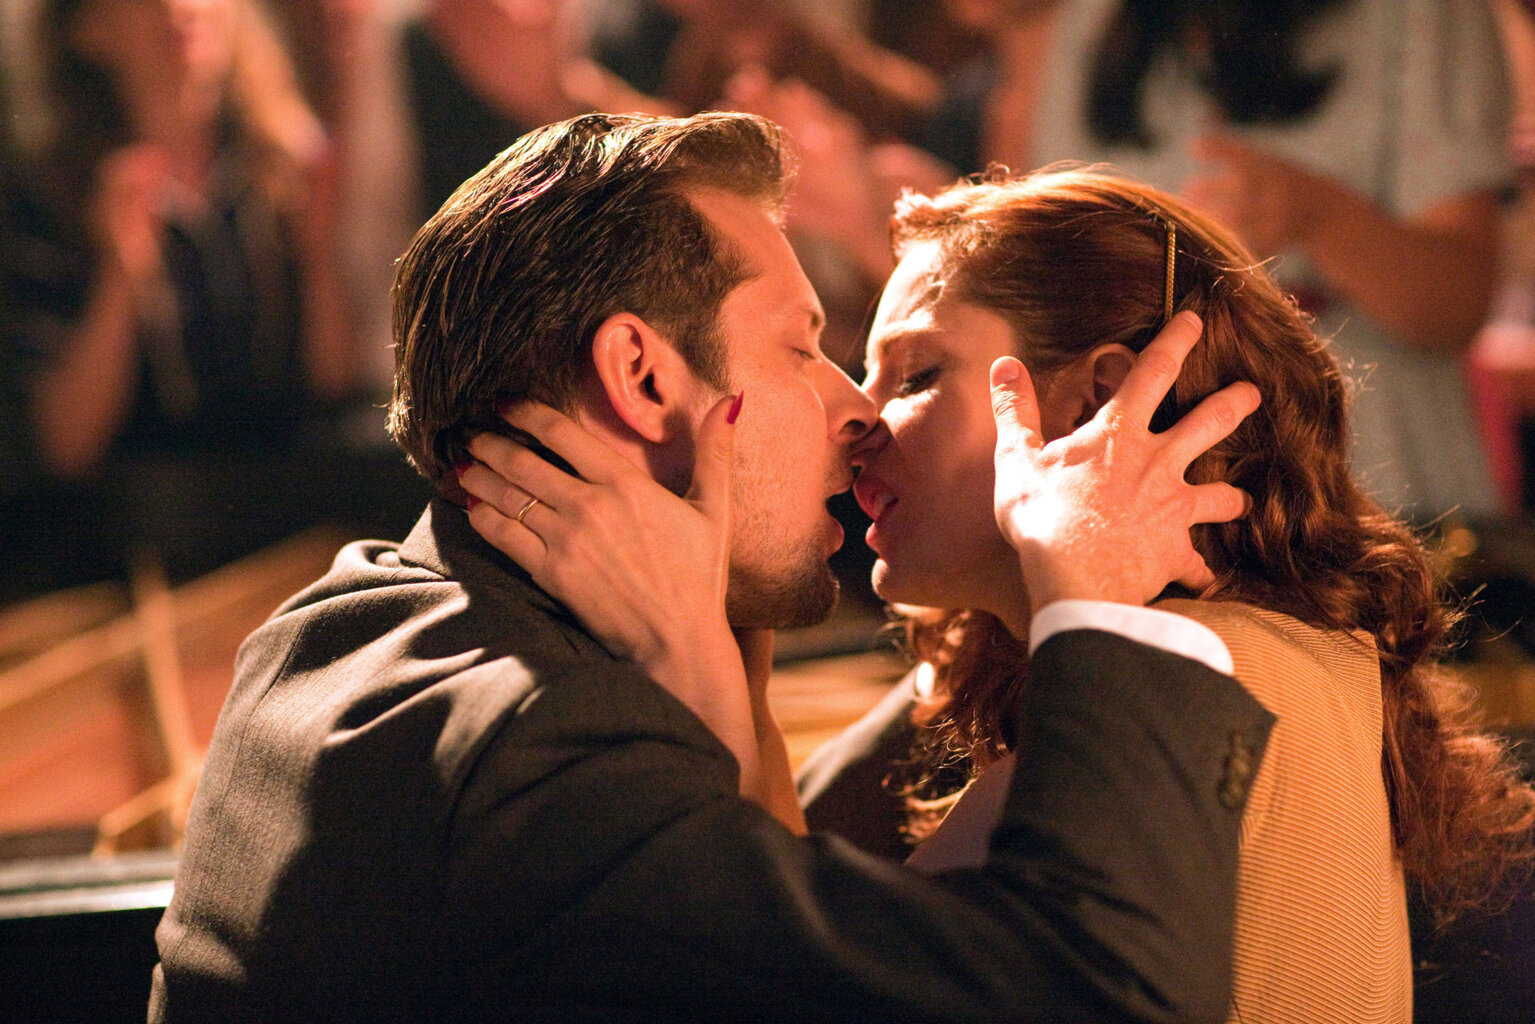 Scene d amour. Поцелуй в театре. "Женщина и мужчины 2010. Любовь драма Франция.